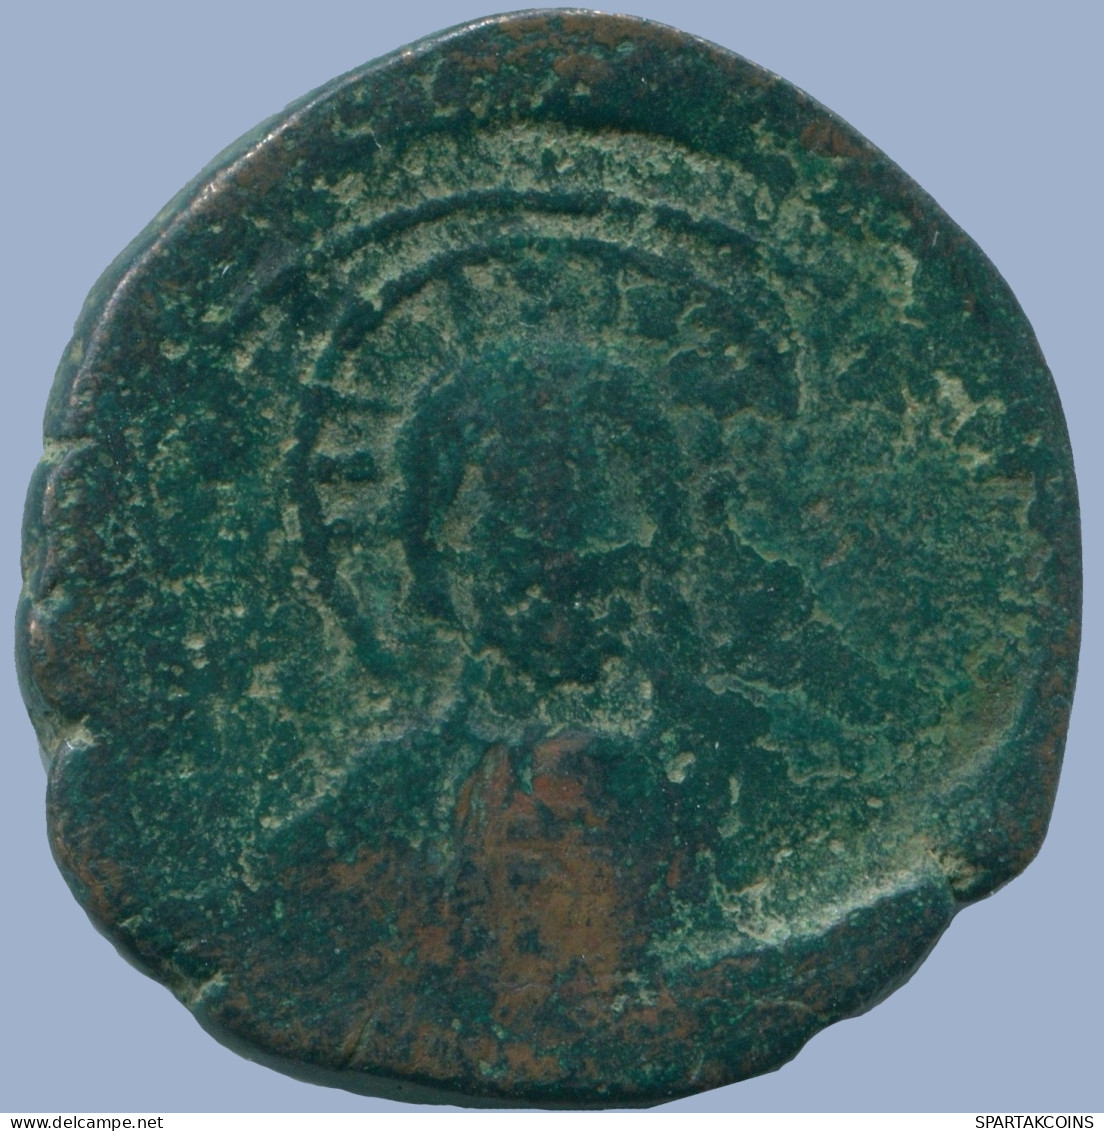 CONSTANTINEVIII ANONYMOUS FOLLIS CLASS A6 1025-1028 11.84g/31mm #ANC13654.16.F.A - Byzantinische Münzen